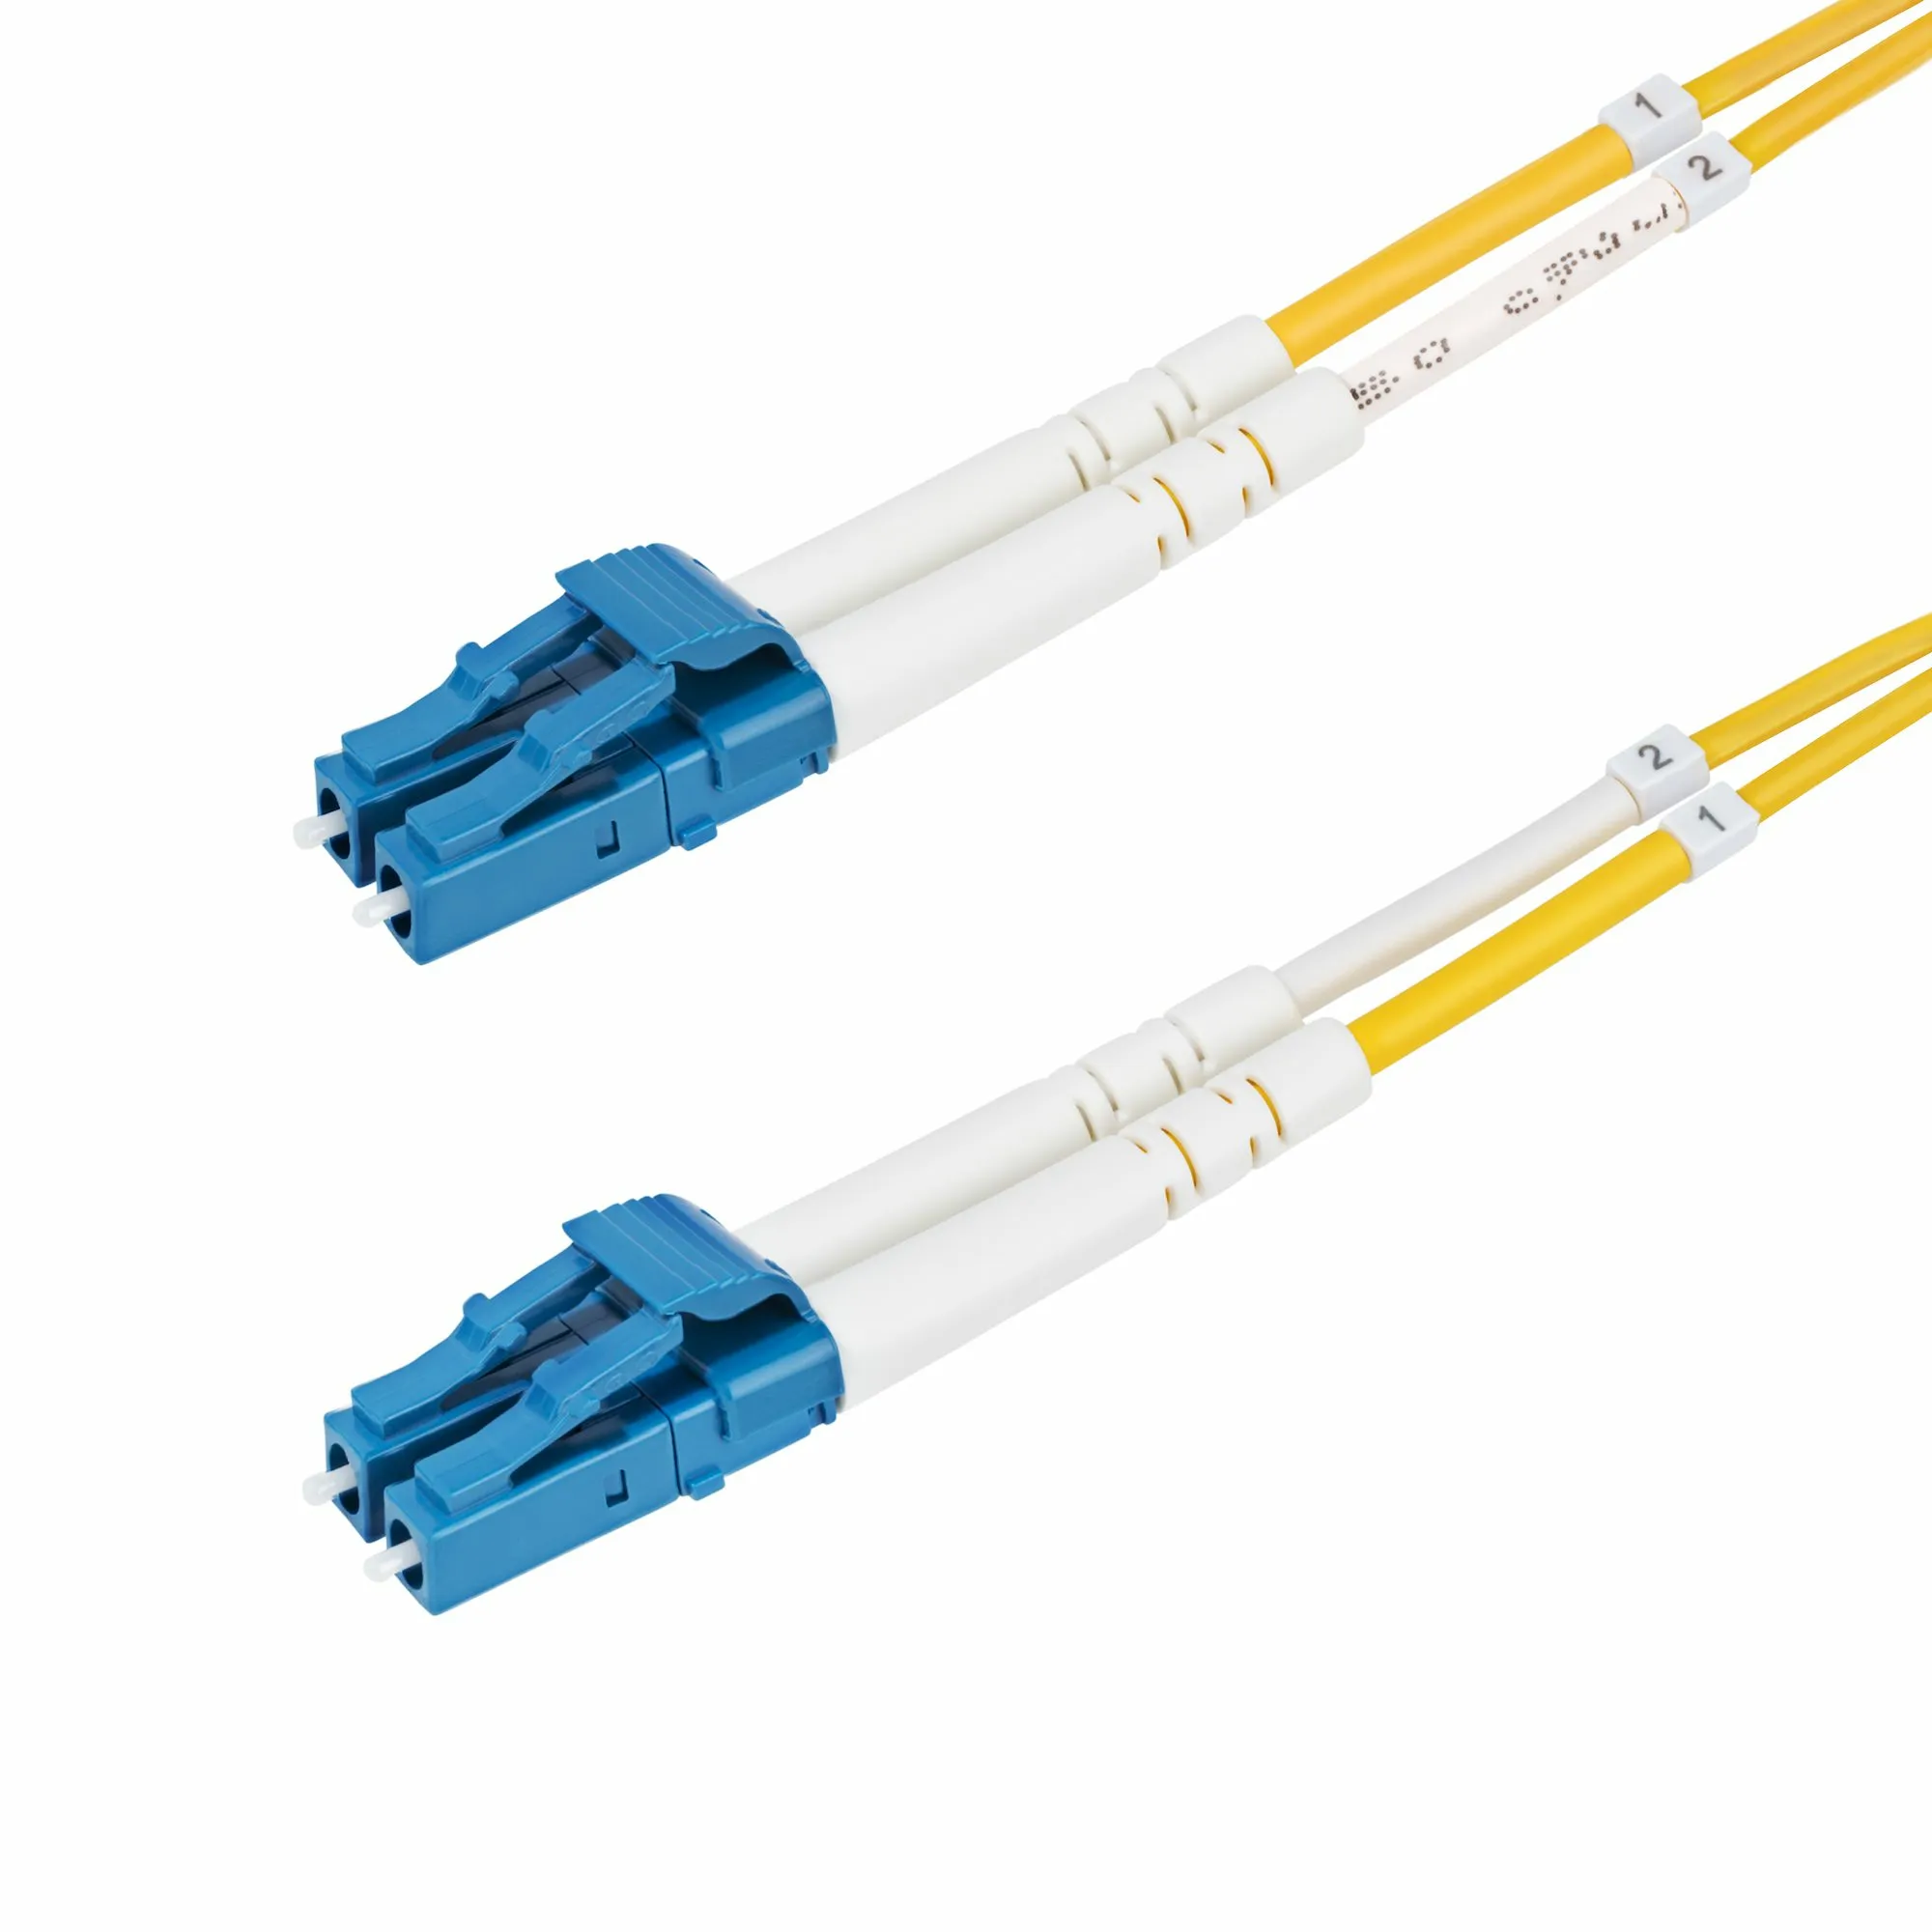 Achat StarTech.com Câble Fibre Optique de 2m Duplex Monomode au meilleur prix